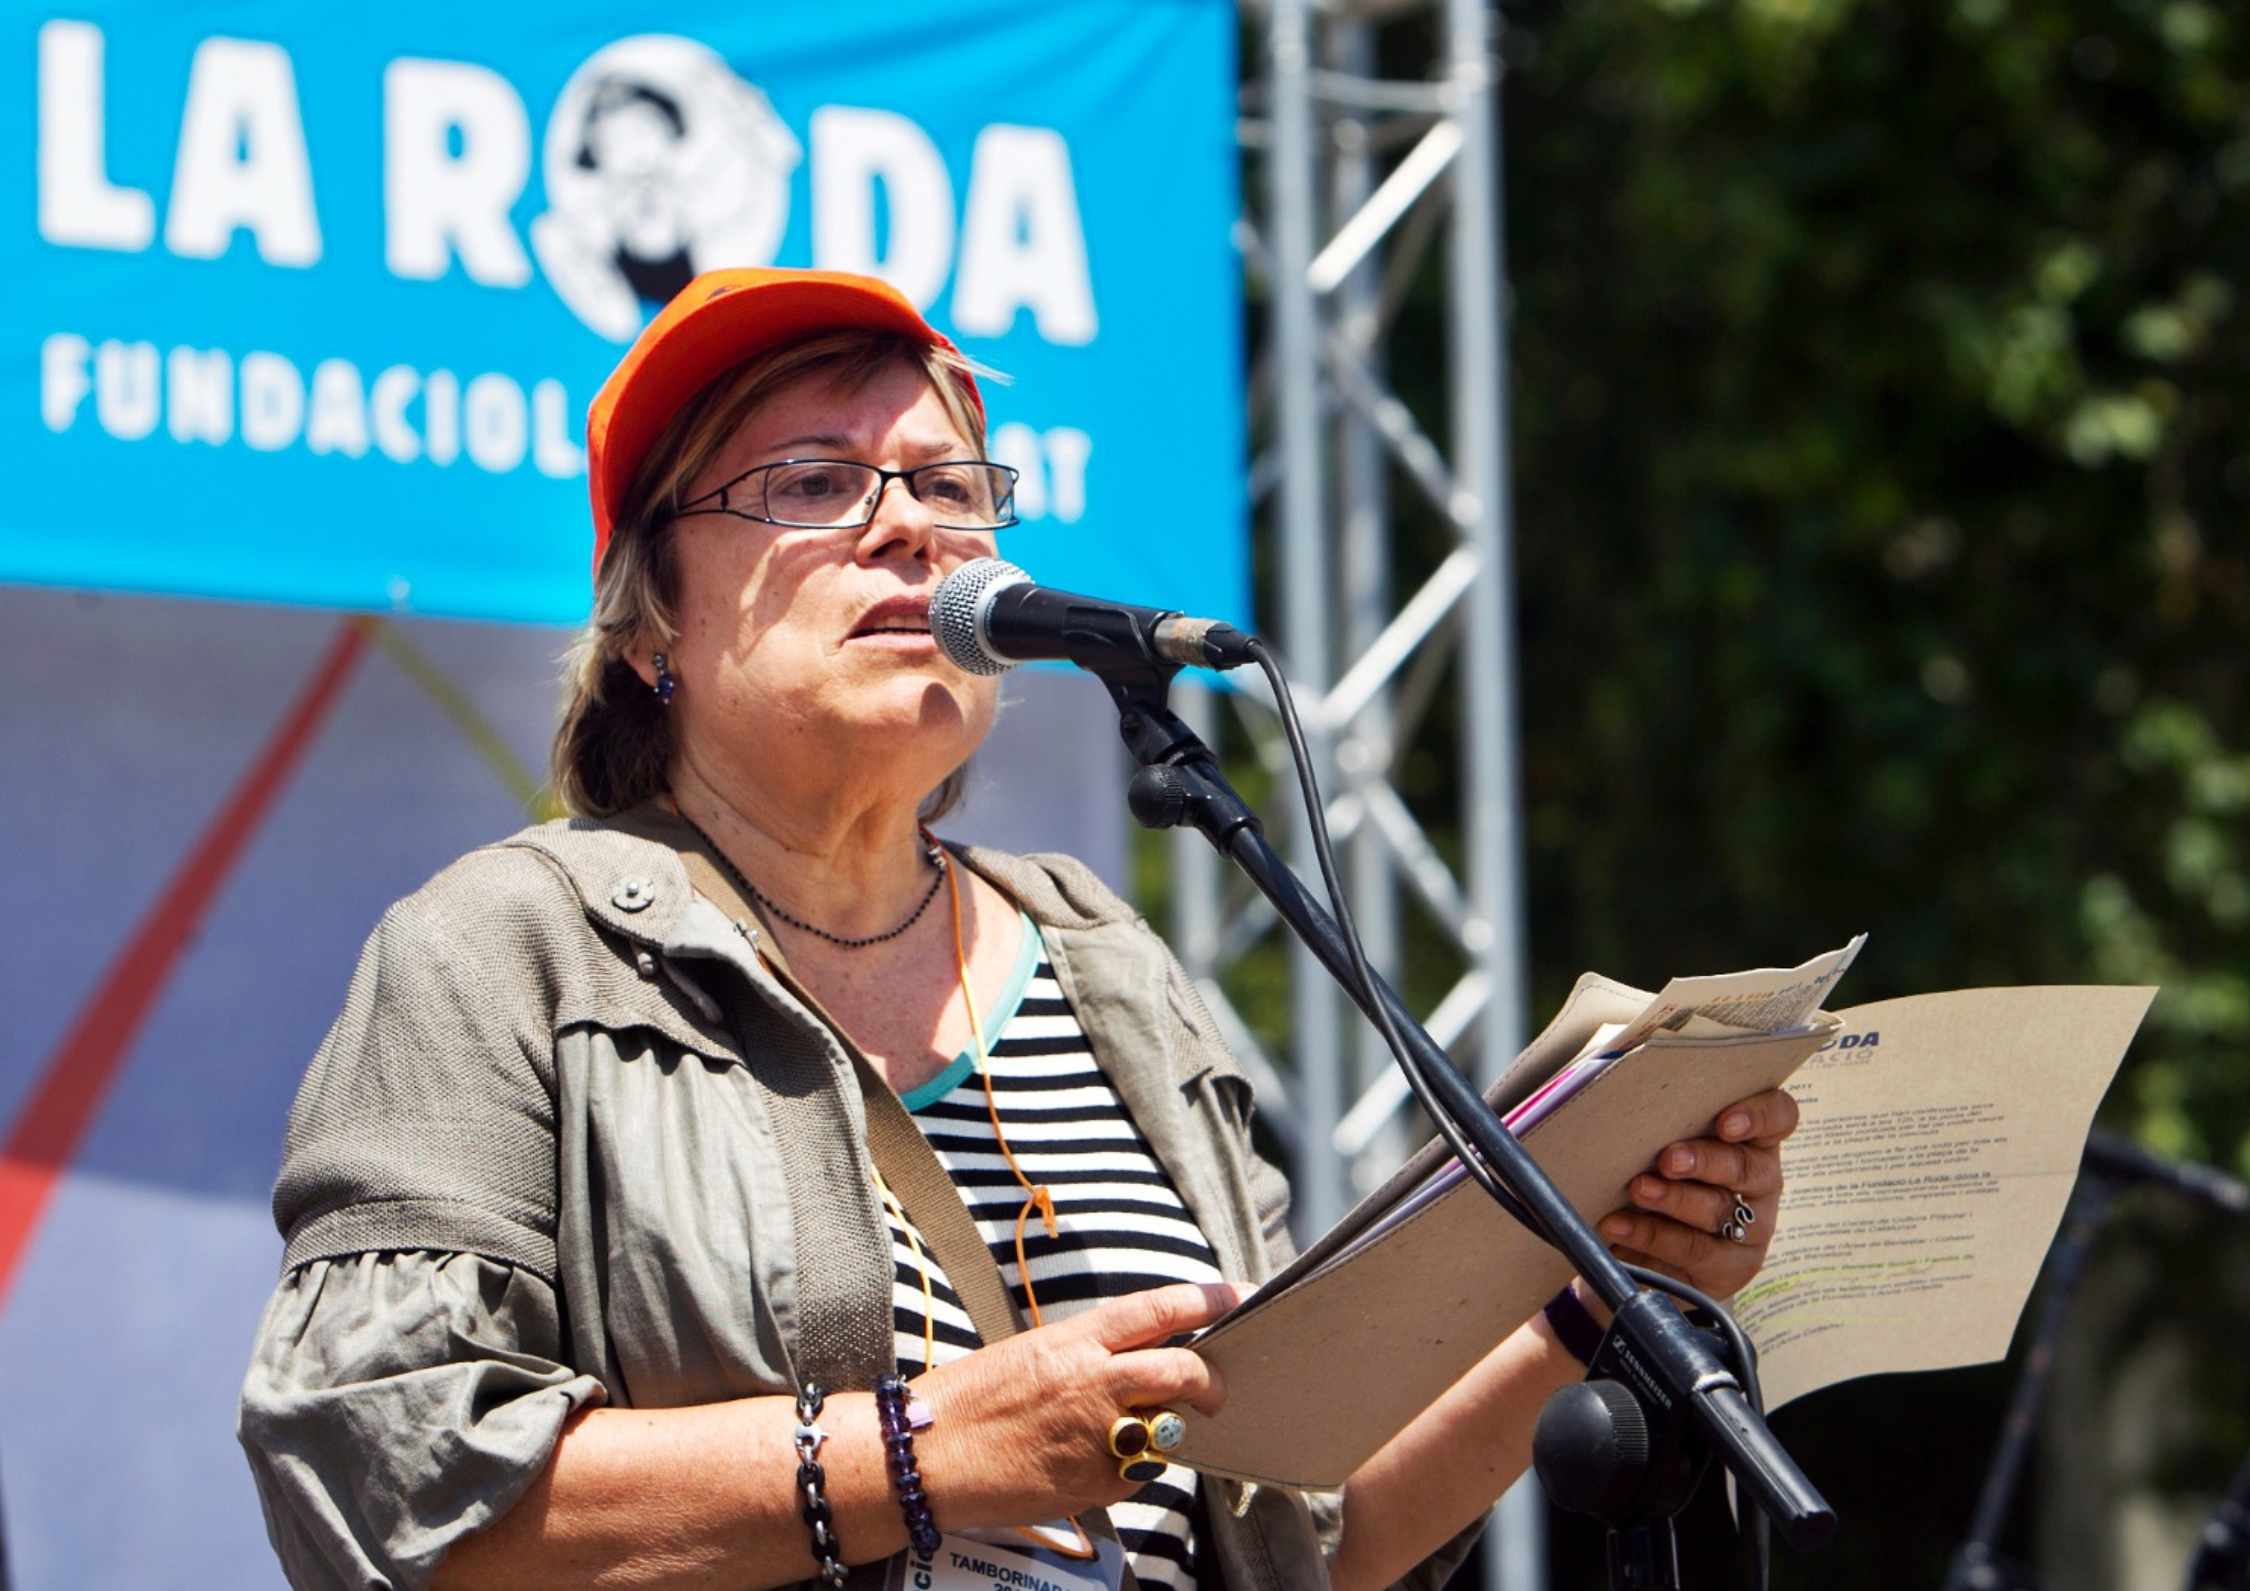 Mor la fundadora i expresidenta de la Fundació La Roda, Lluïsa Celades